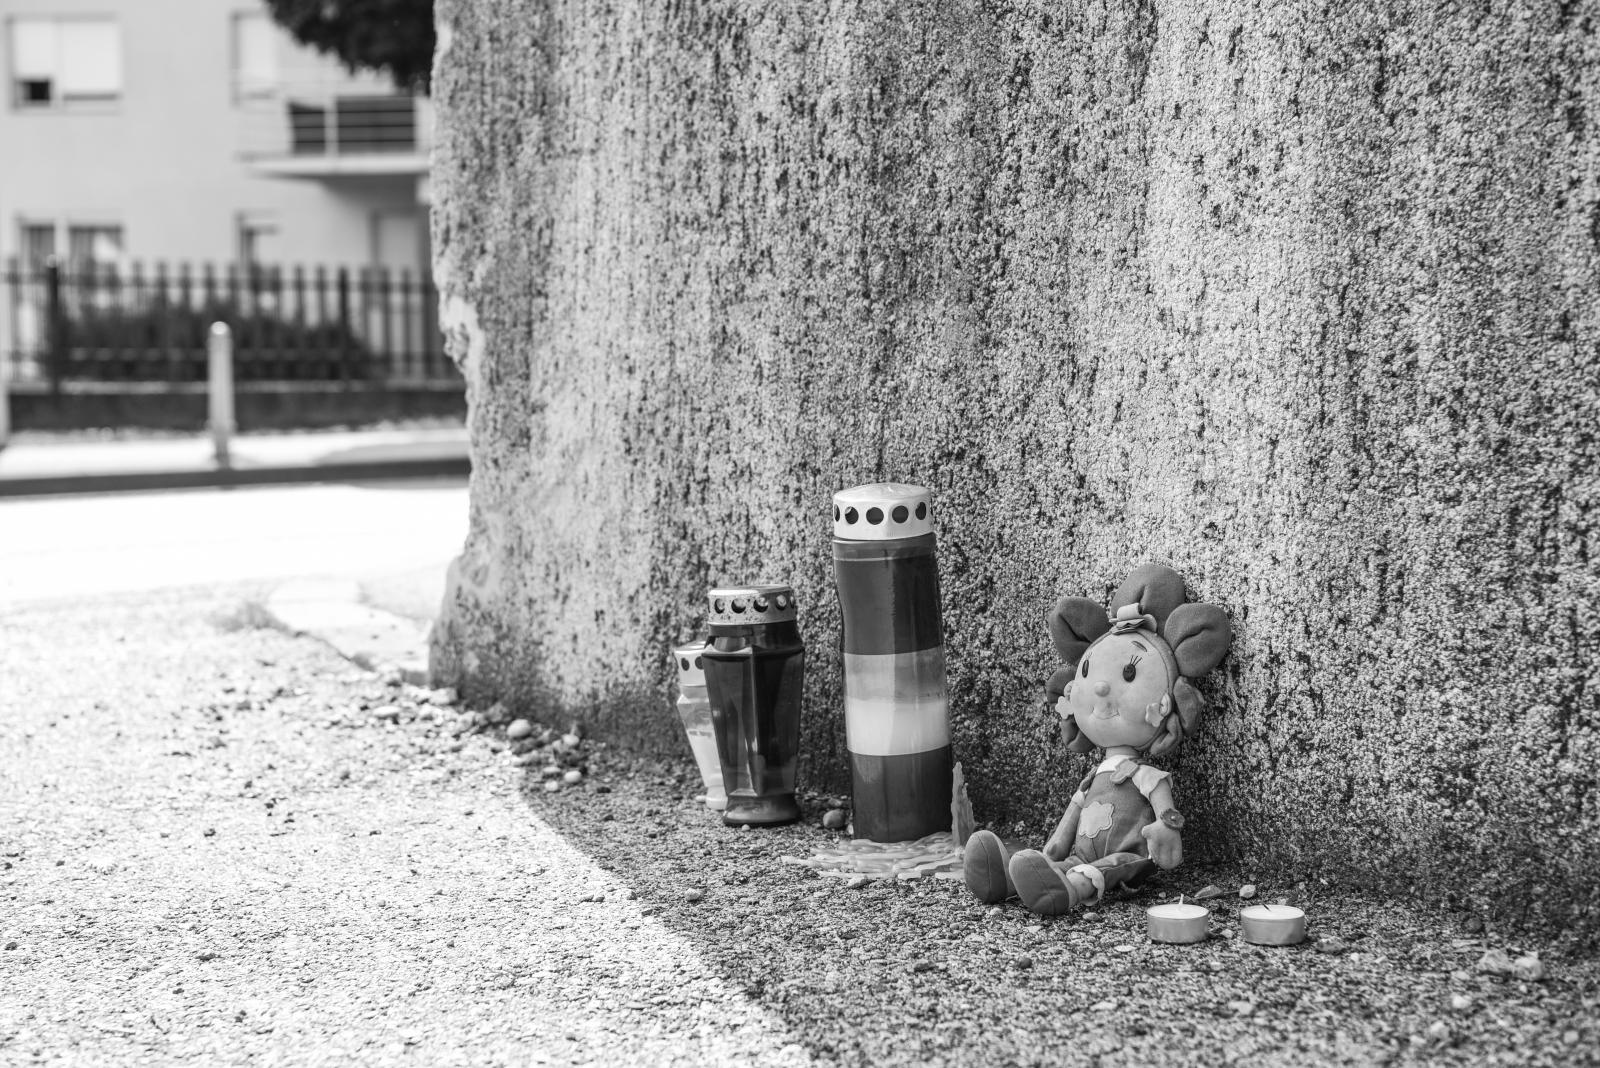 26.09.2021., Zagreb - Ulaz na adresi Mlinovi 178 u kojemu je ubijeno troje djece.

Photo: Bruno Fantulin/PIXSELL